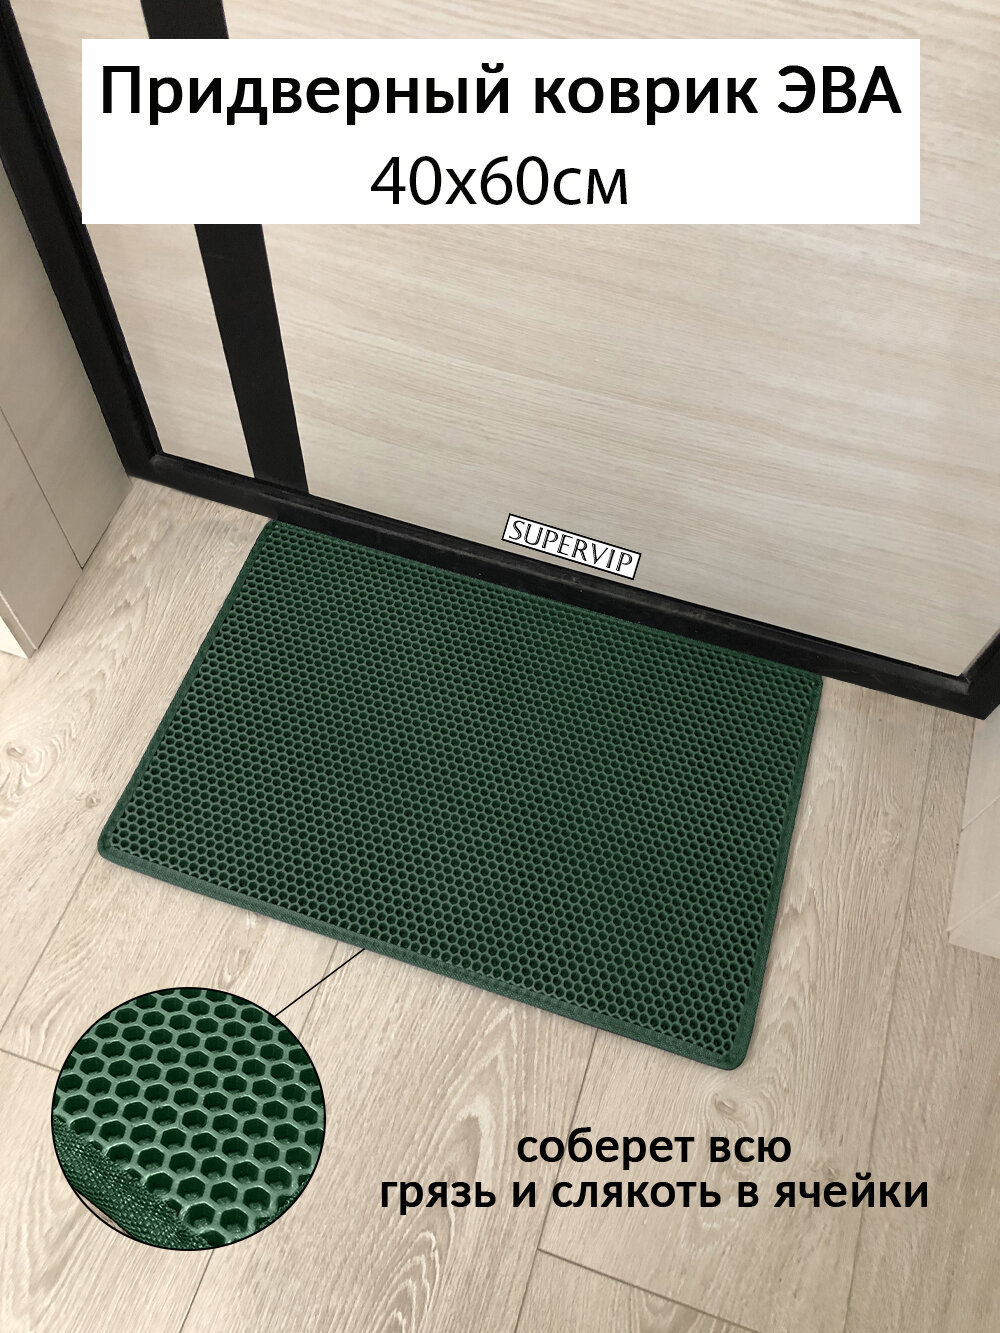 Придверный коврик ЭВА 60х40 см в прихожую и коридор. Ячеистый коврик для сушки обуви. Цвет темно-зеленый.